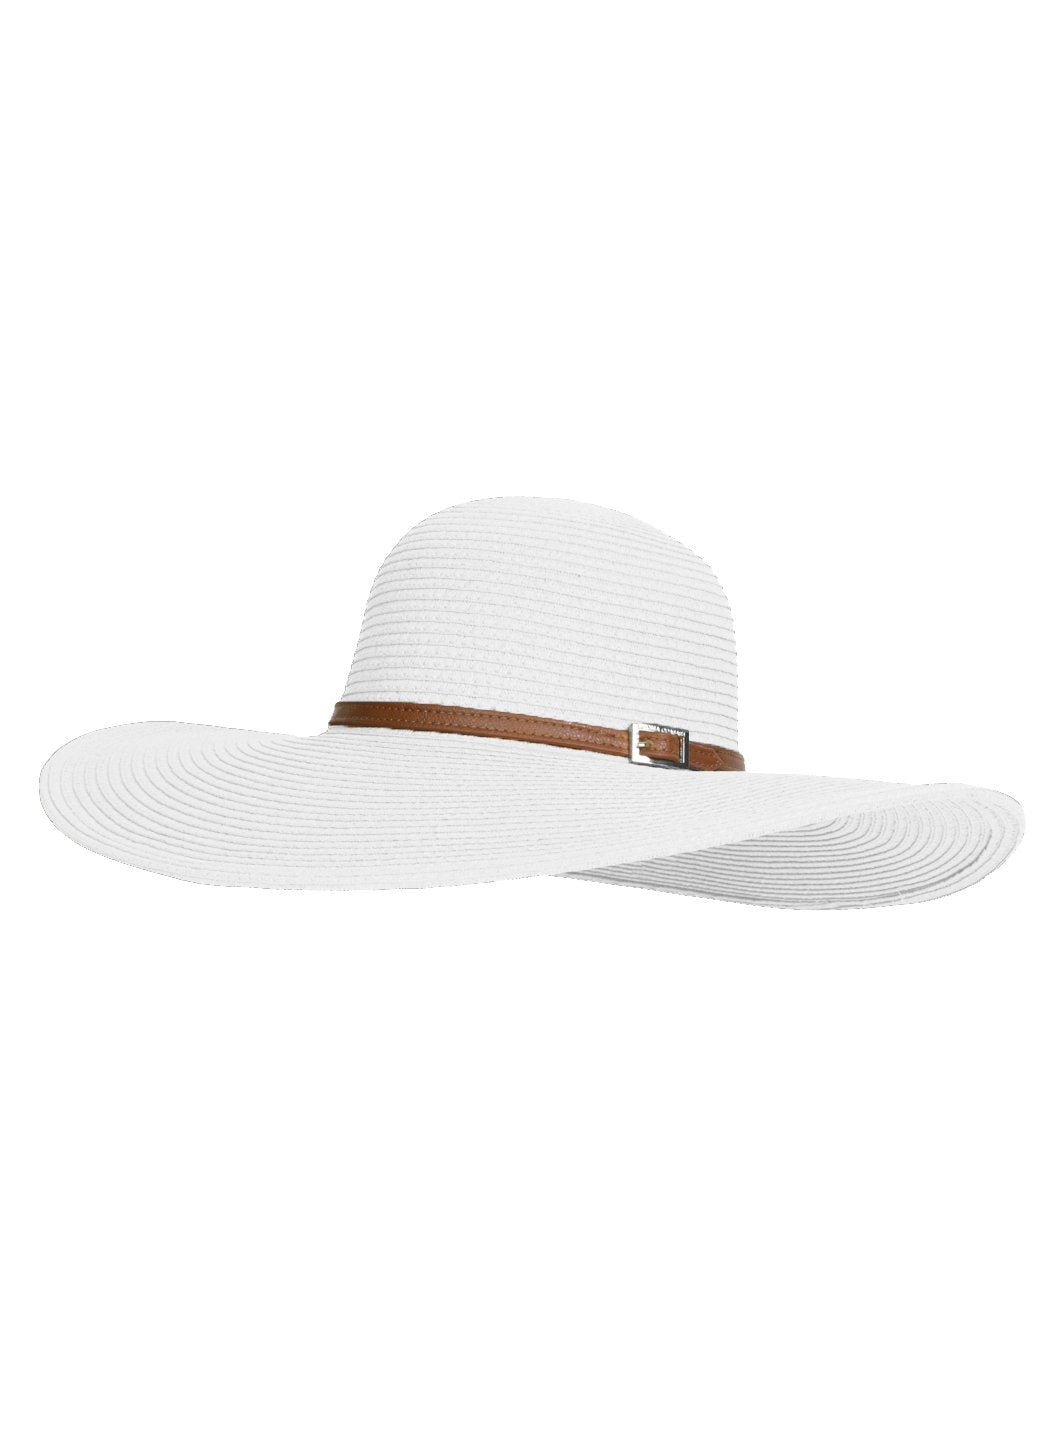 Melissa Odabash Jemima Wide Brim Sun Hat